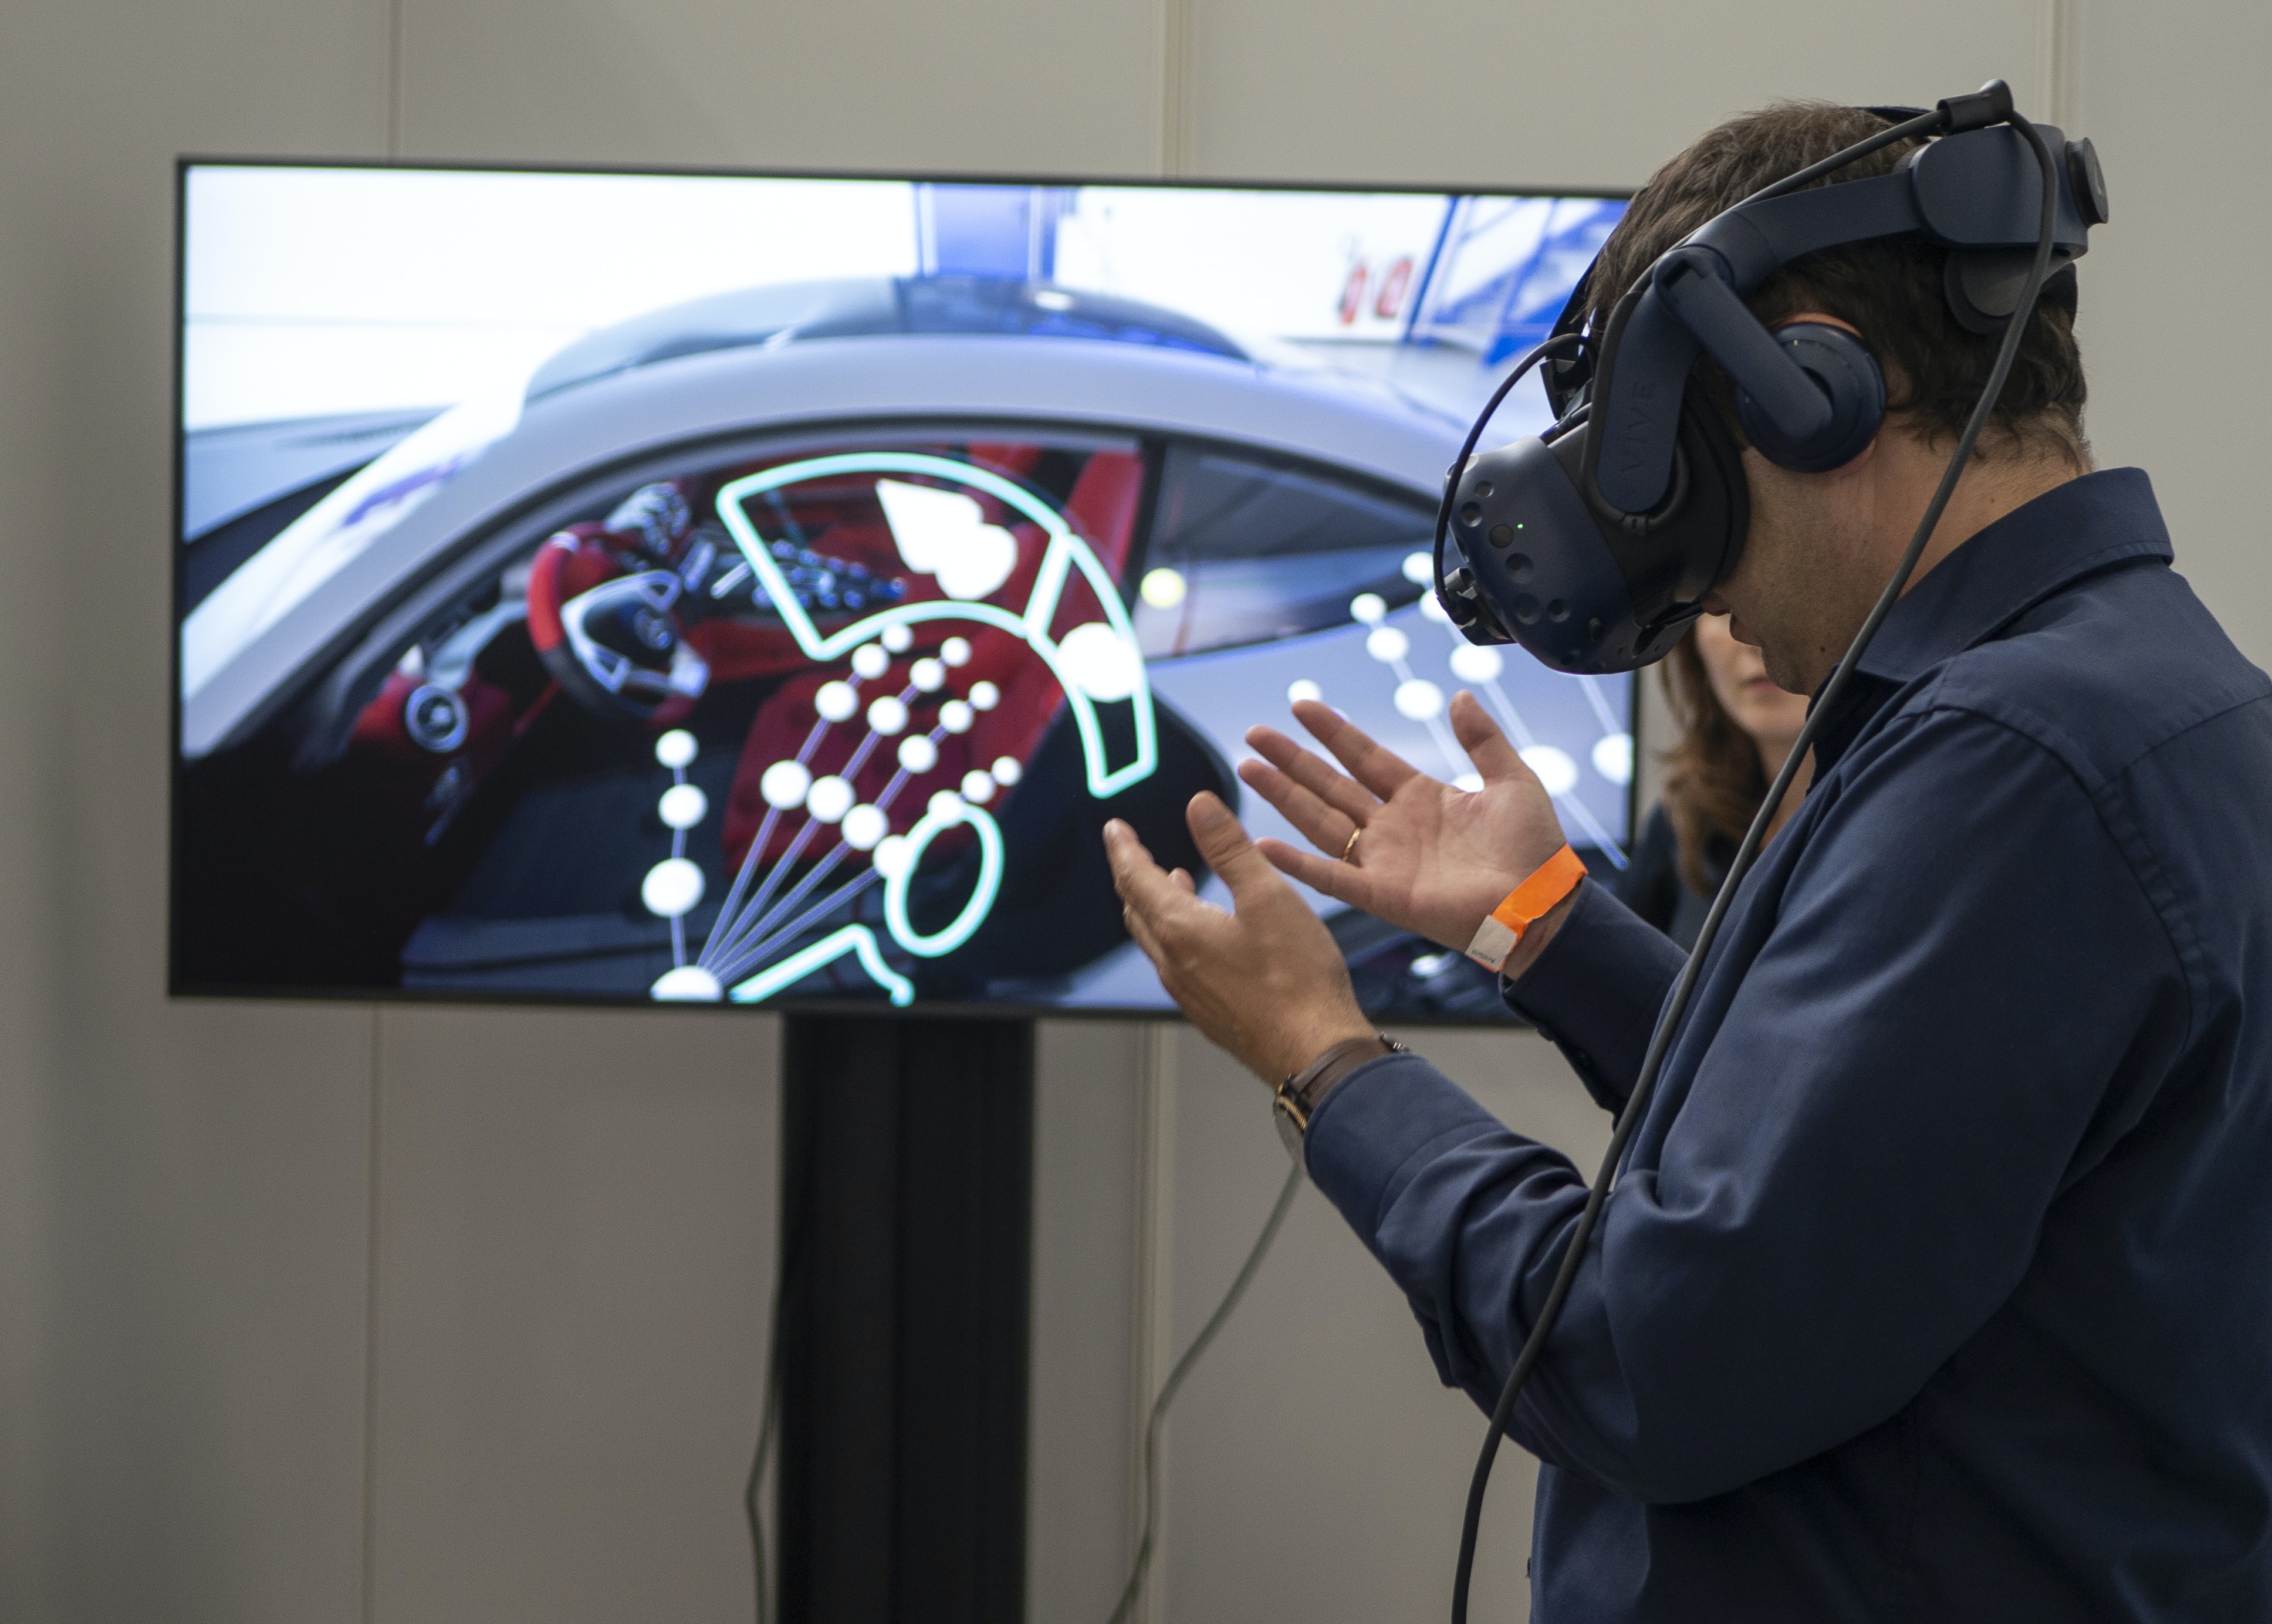 XR Expo 2019: expoziție pentru realitate virtuală (vr), realitate augmentată (ar), realitate mixtă (mr) și realitate extinsă (xr)